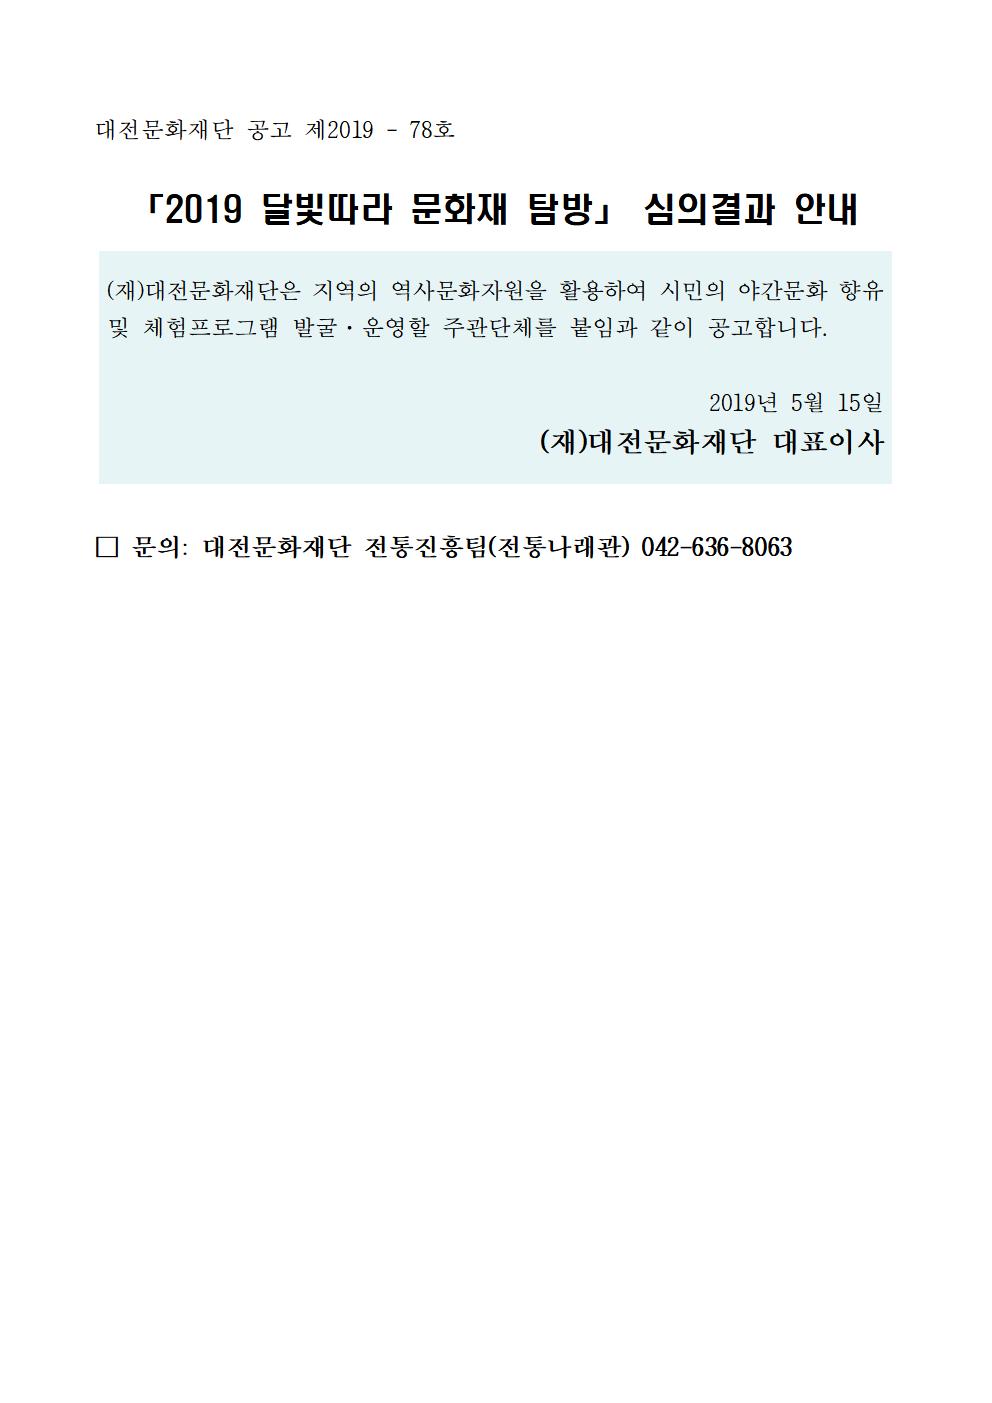 2019 달빛따라 문화재 탐방 주관단체 선정결과 공고